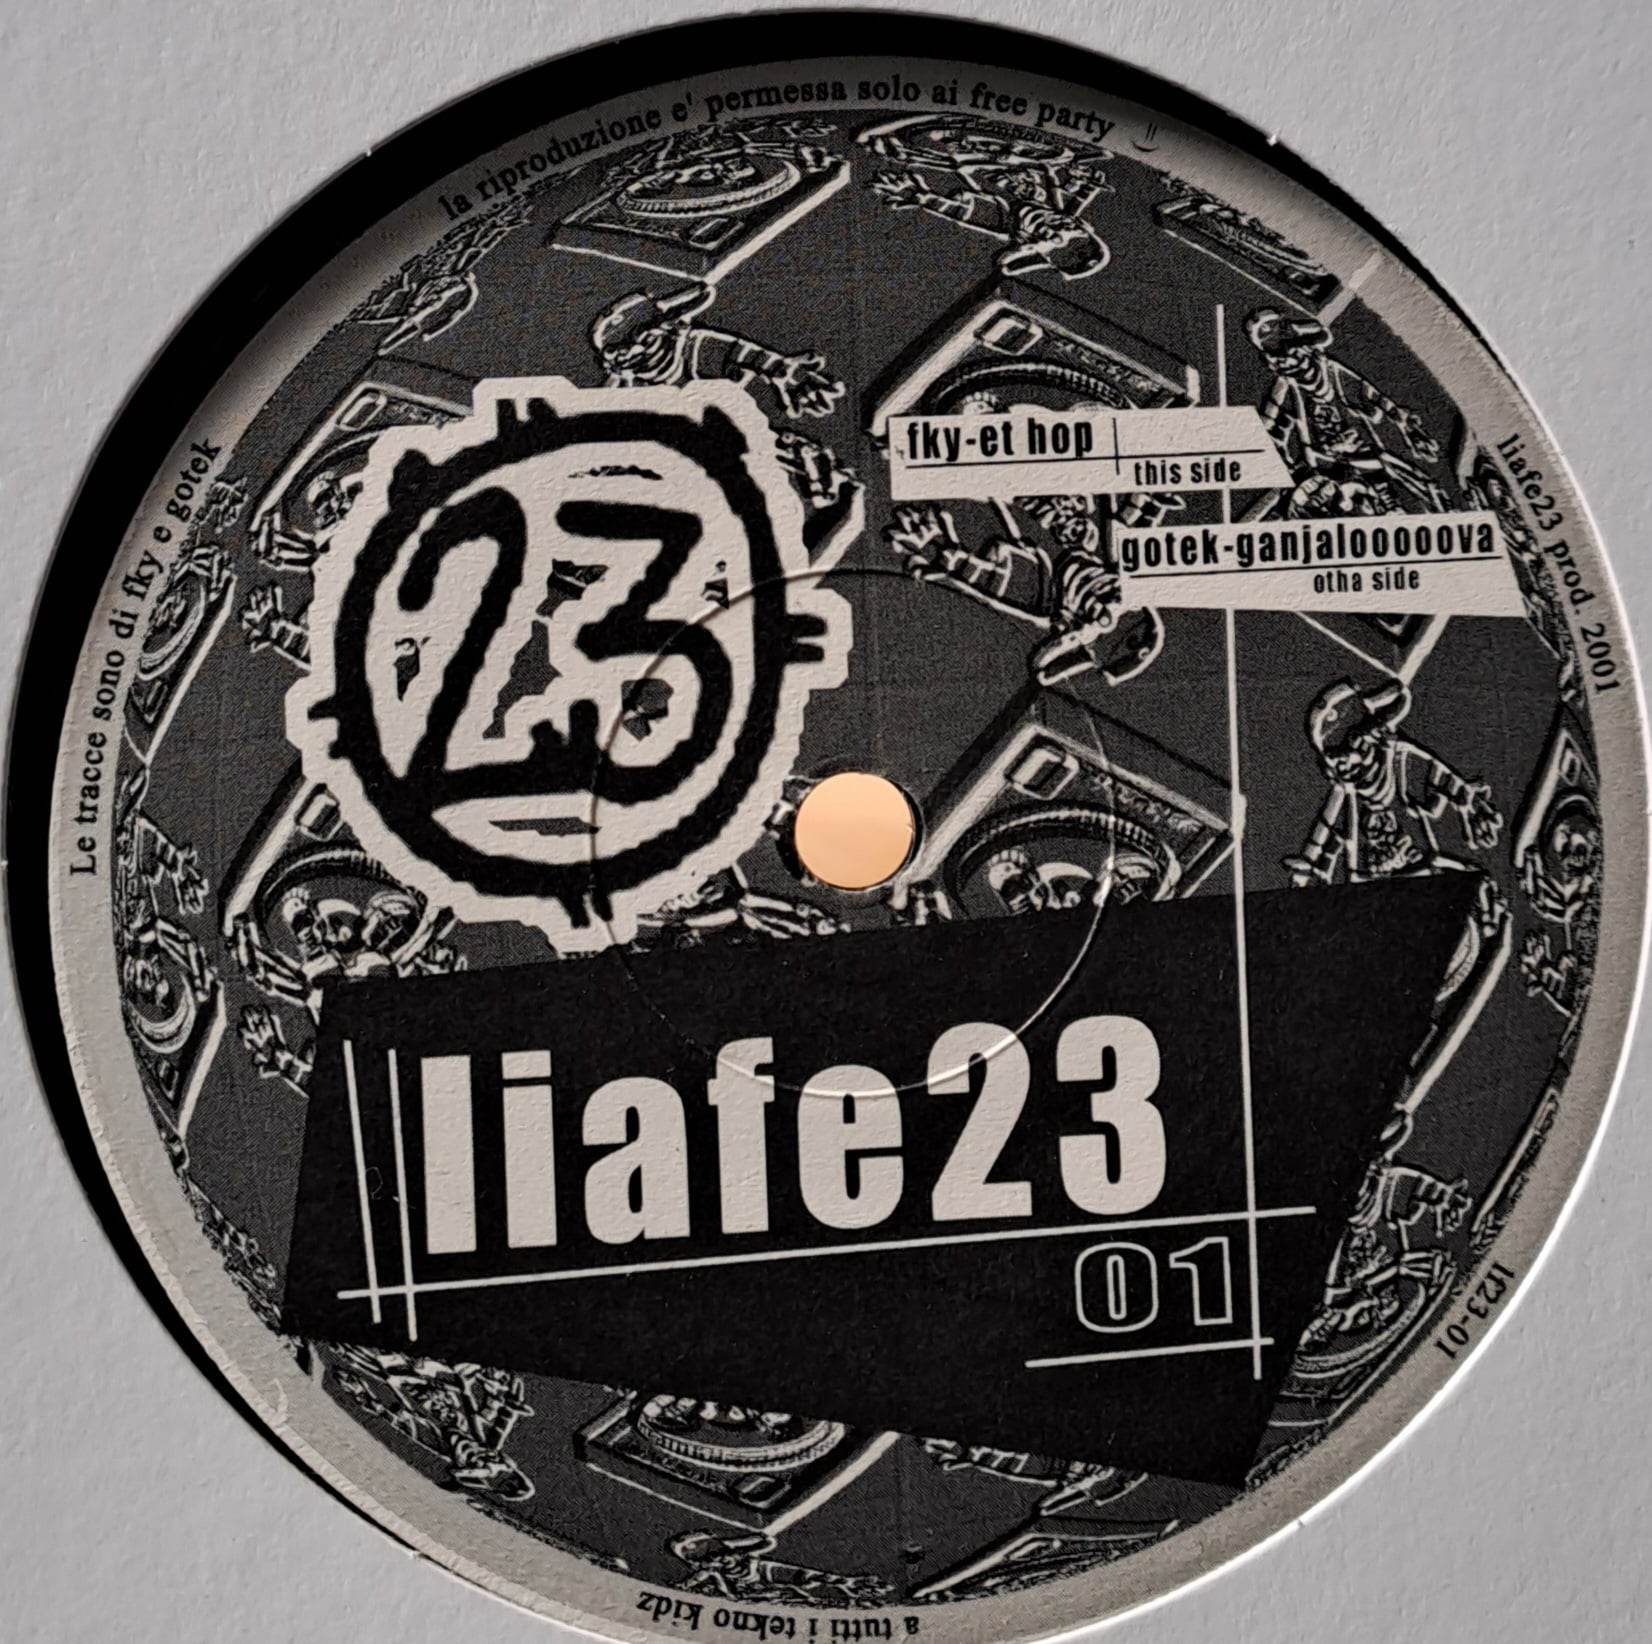 Liafe 23 001 - vinyle freetekno